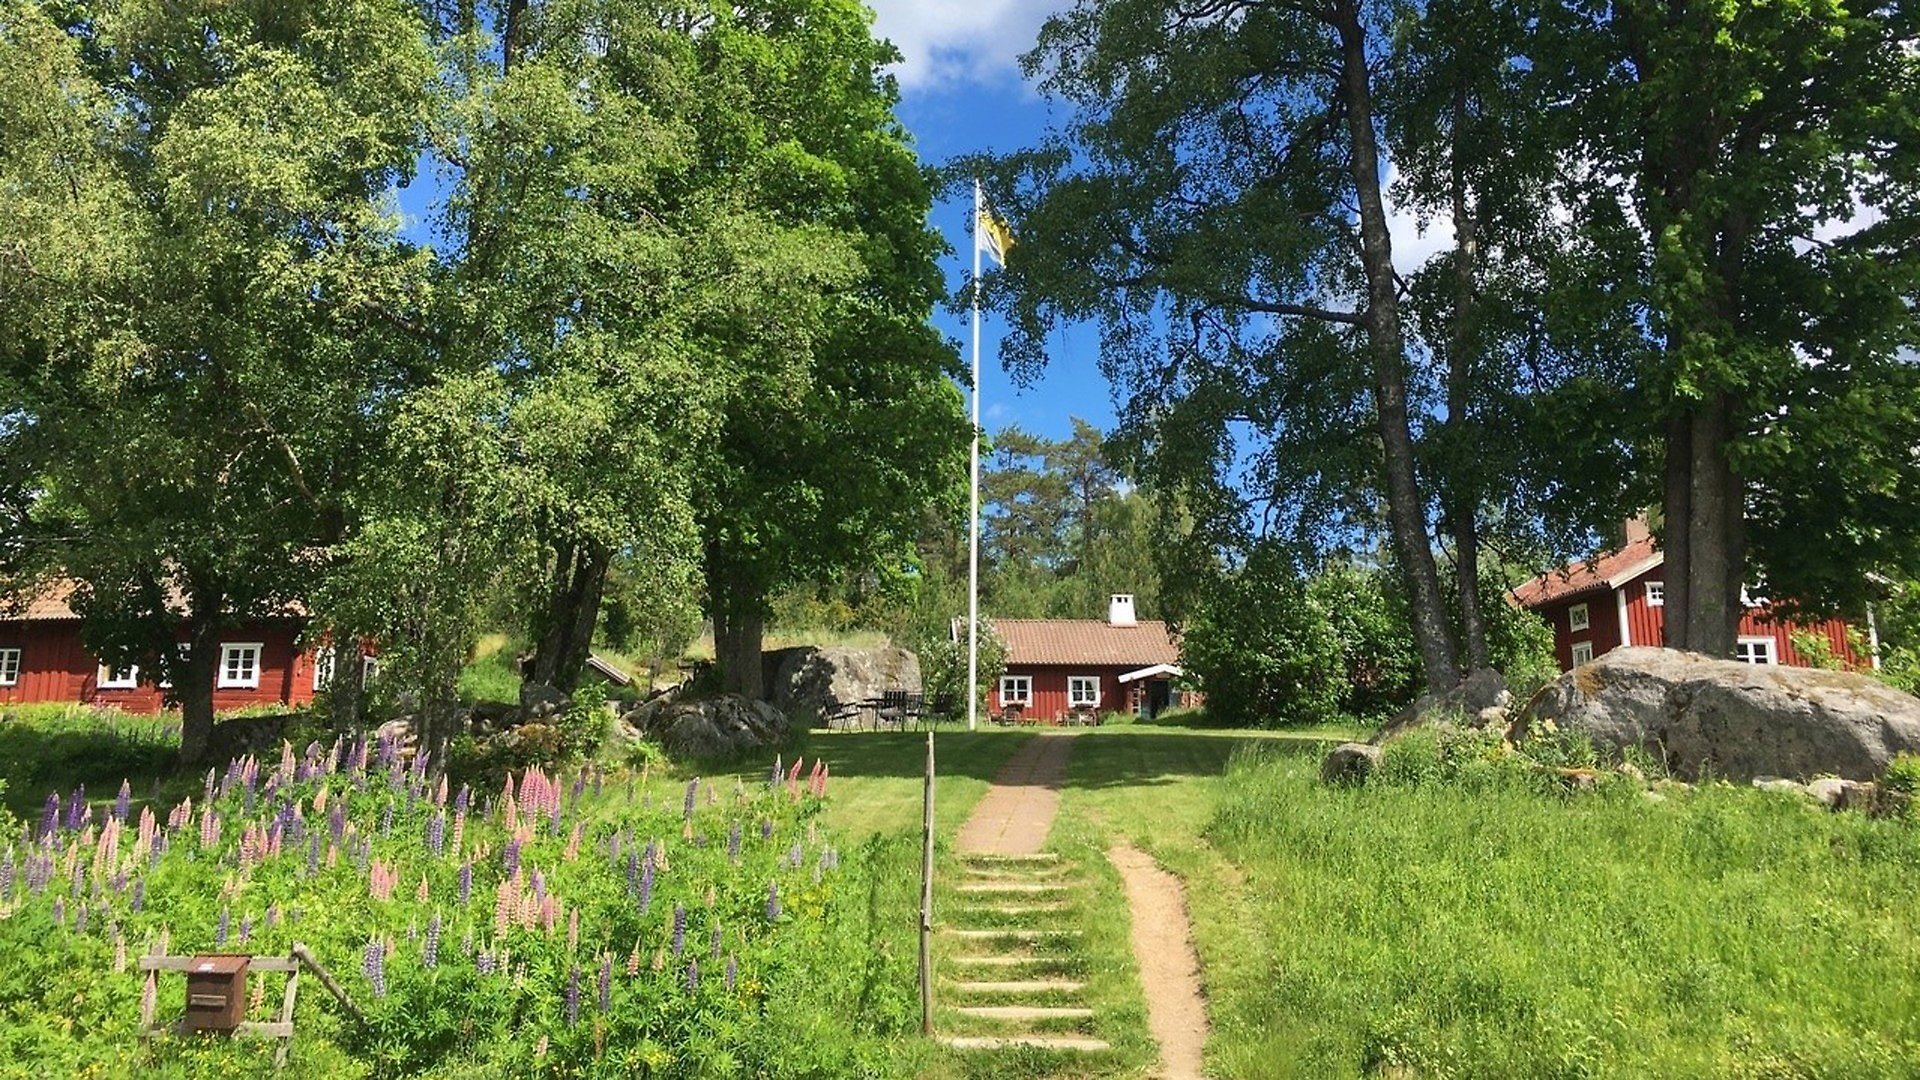 Vy av Tivedstorp. I förgrunden syns en trappa och stenplattor upp till tre hus. Till vänster om trappan blommar rosa och lila lupiner, till höger växer gräs. Ovanför trappan växer ett par träd. Bakomträden skymtar tre röda trähus runt en gräsplan. På gräsplanen finns bord och stolar som man kan sitta på samt en flaggstång med den svenska flaggan hissad. Rakt fram, bakom gräsplanen ligger Tivedstorps reception och café i en röd enplansstuga. Till vänster om gräsplanen syns en röd timmerstuga och till höger ett rött trähus. 